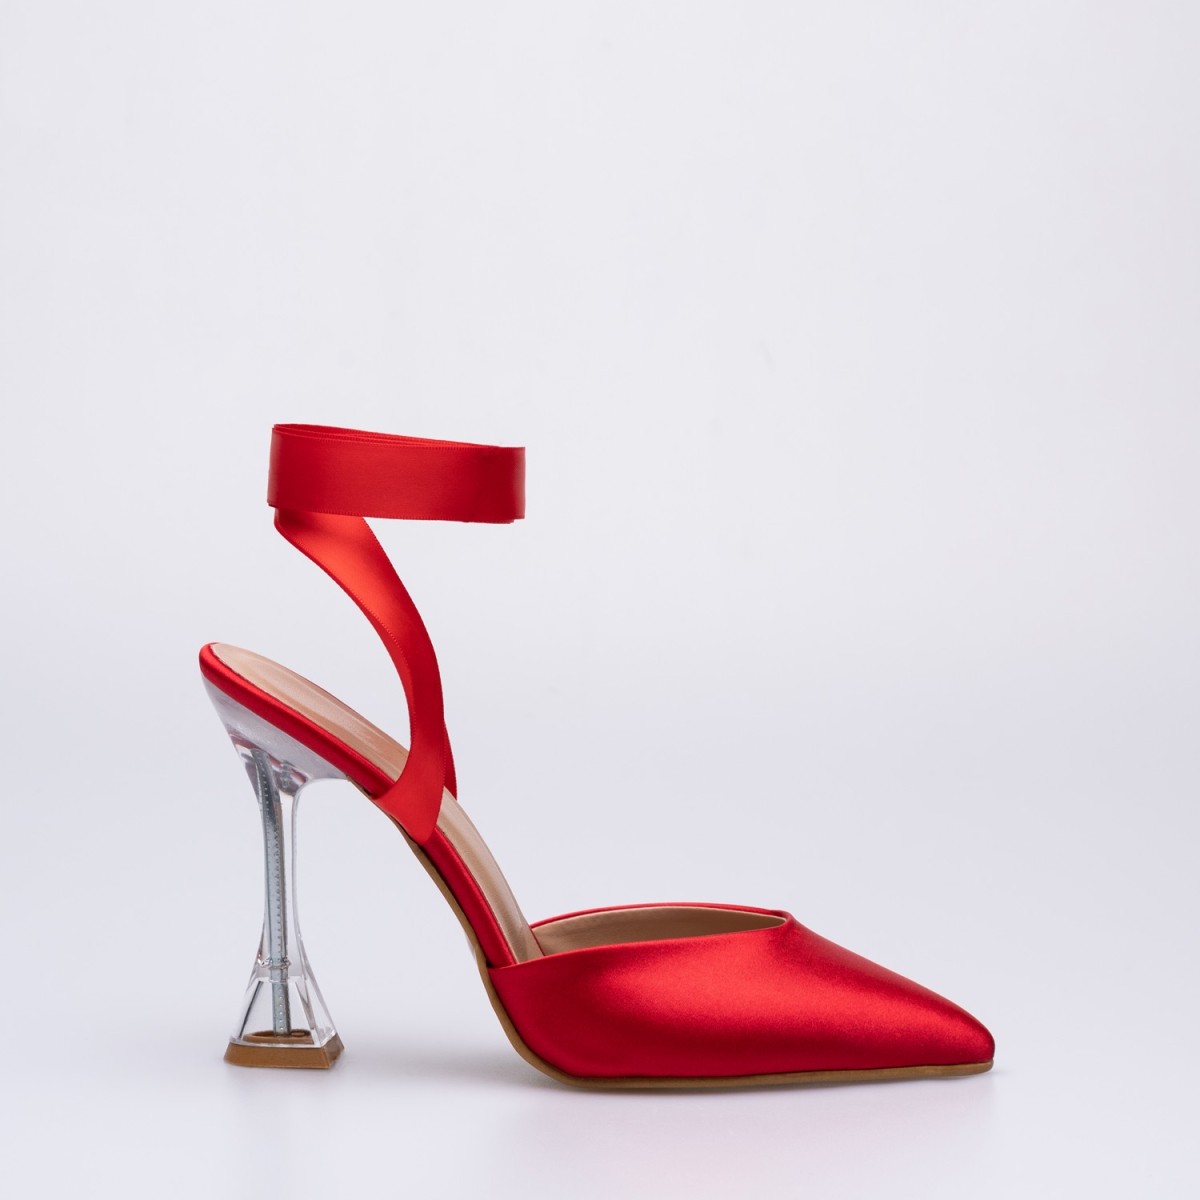 Tanda İnce Yüksek Şeffaf Topuklu Ayakkabı Stiletto Kırmızı